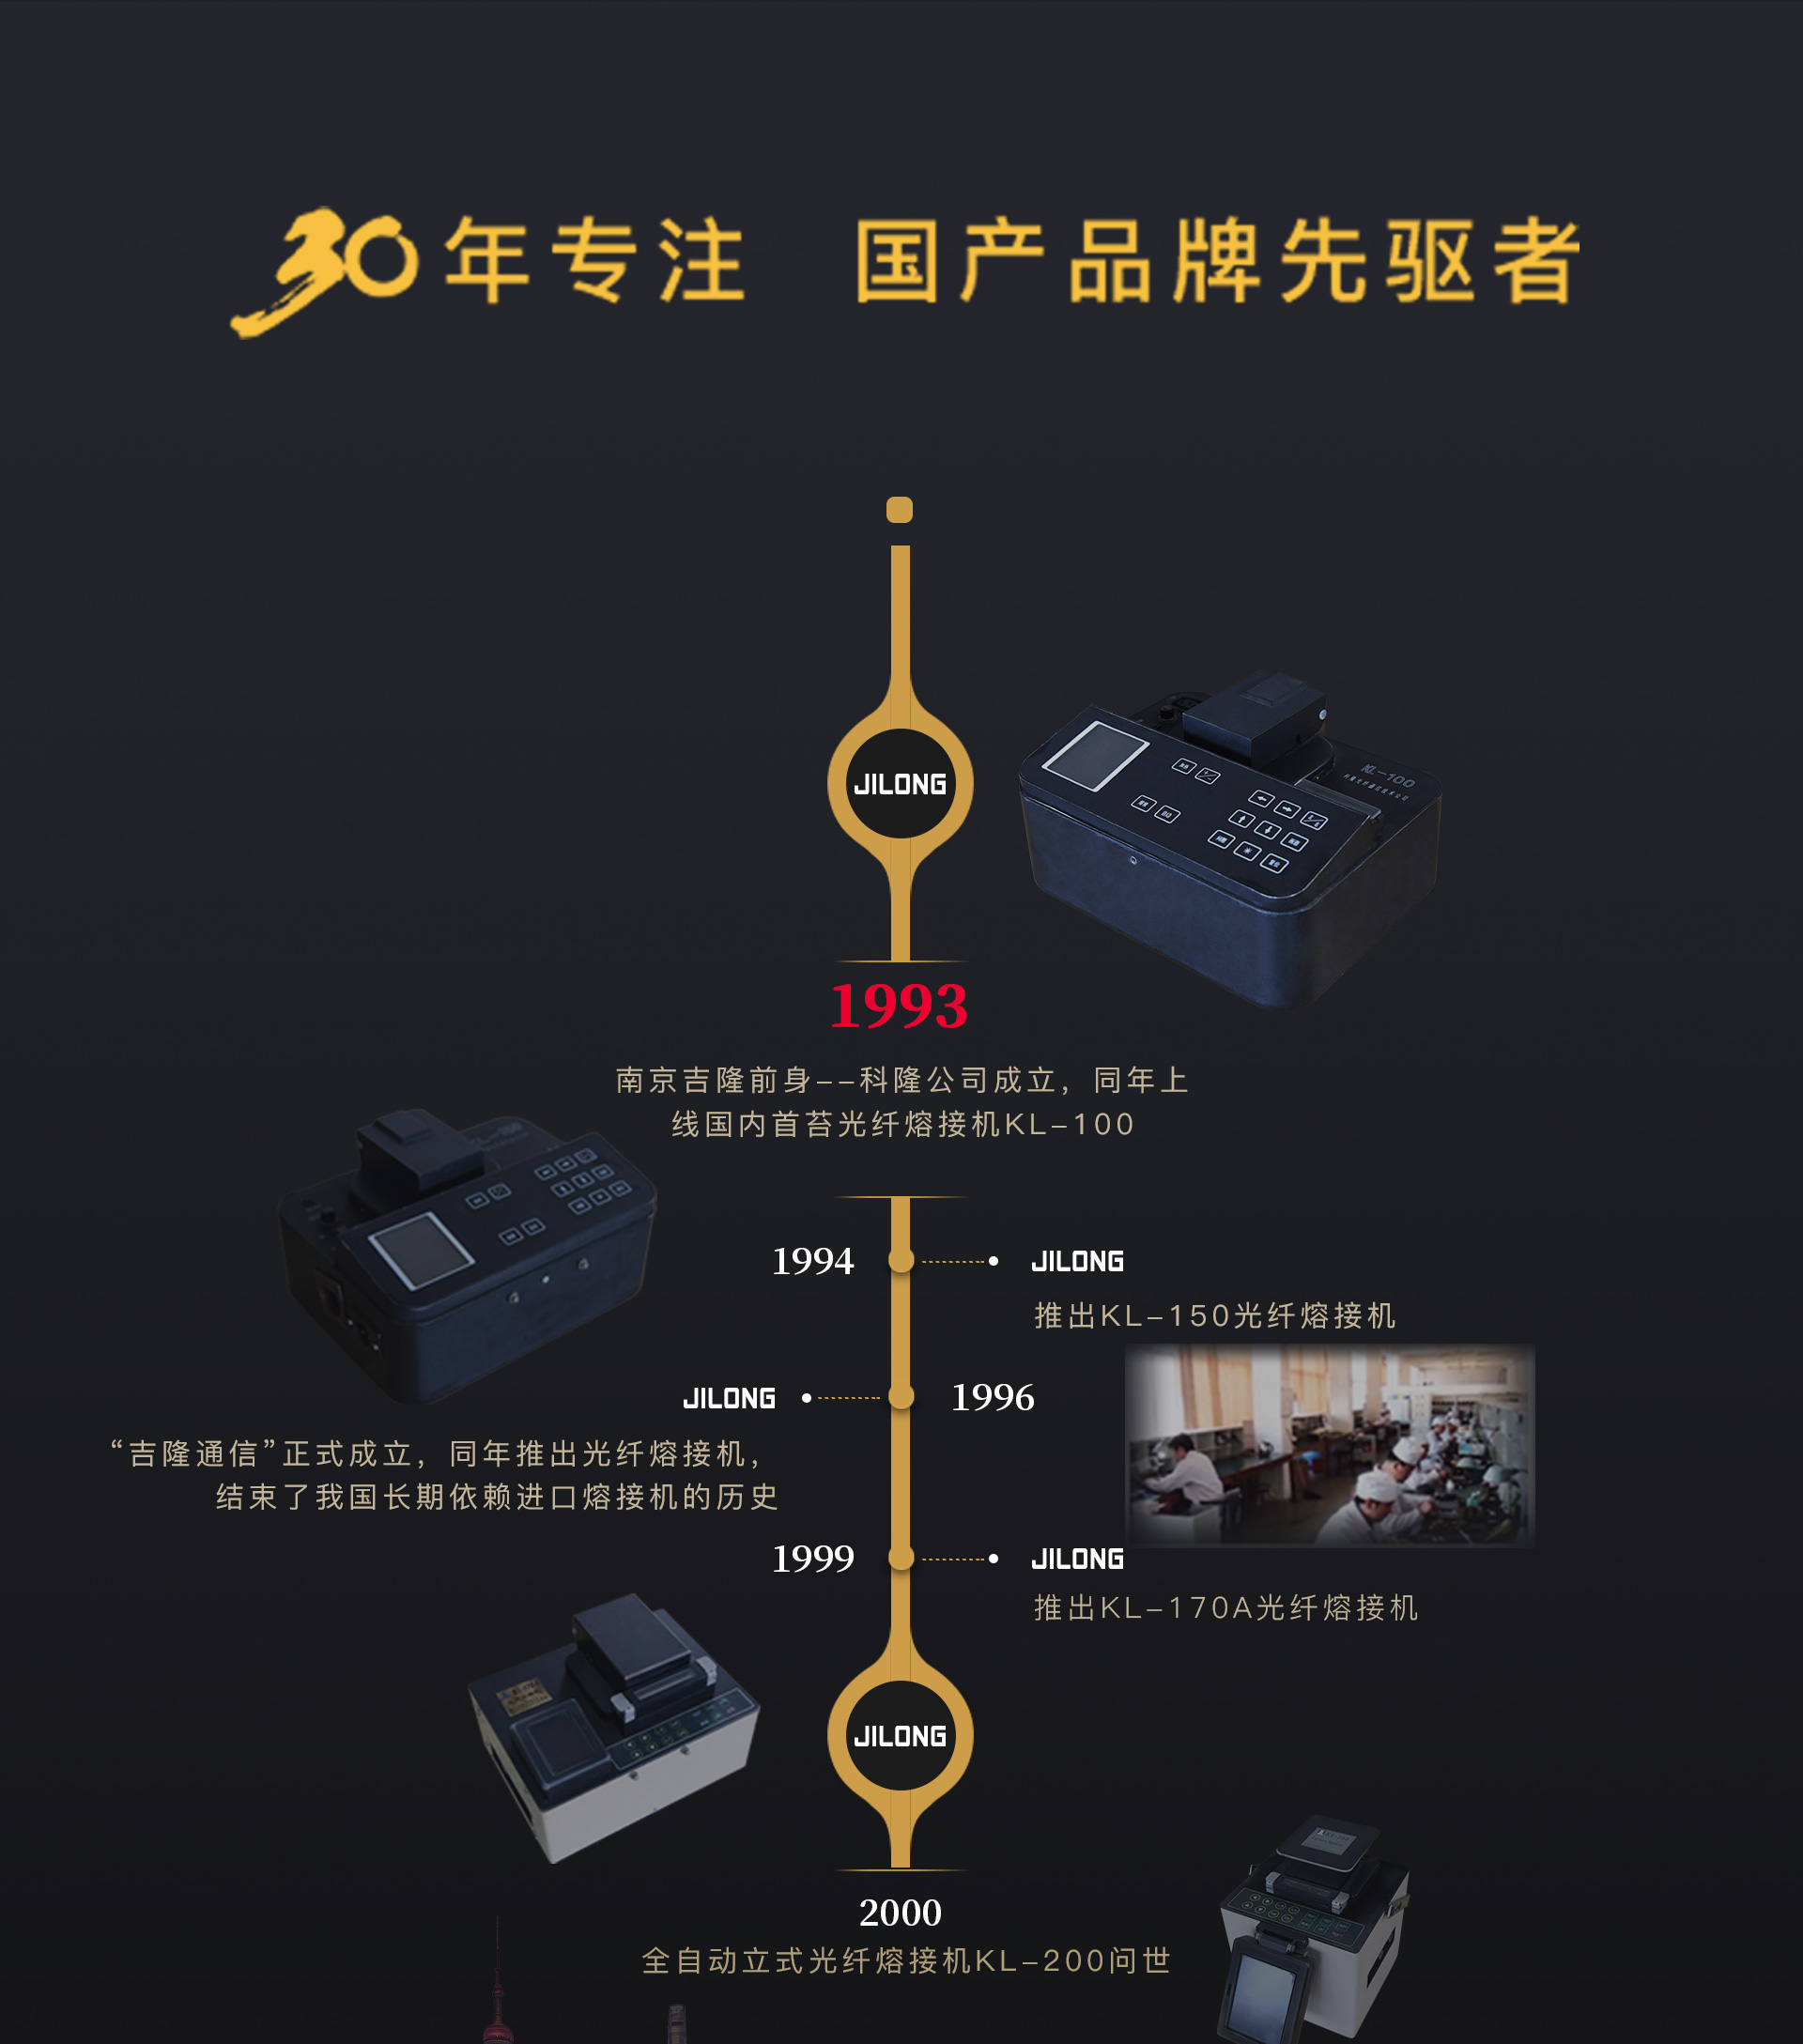 Jilong 30 años de I + D y experiencia en fabricación